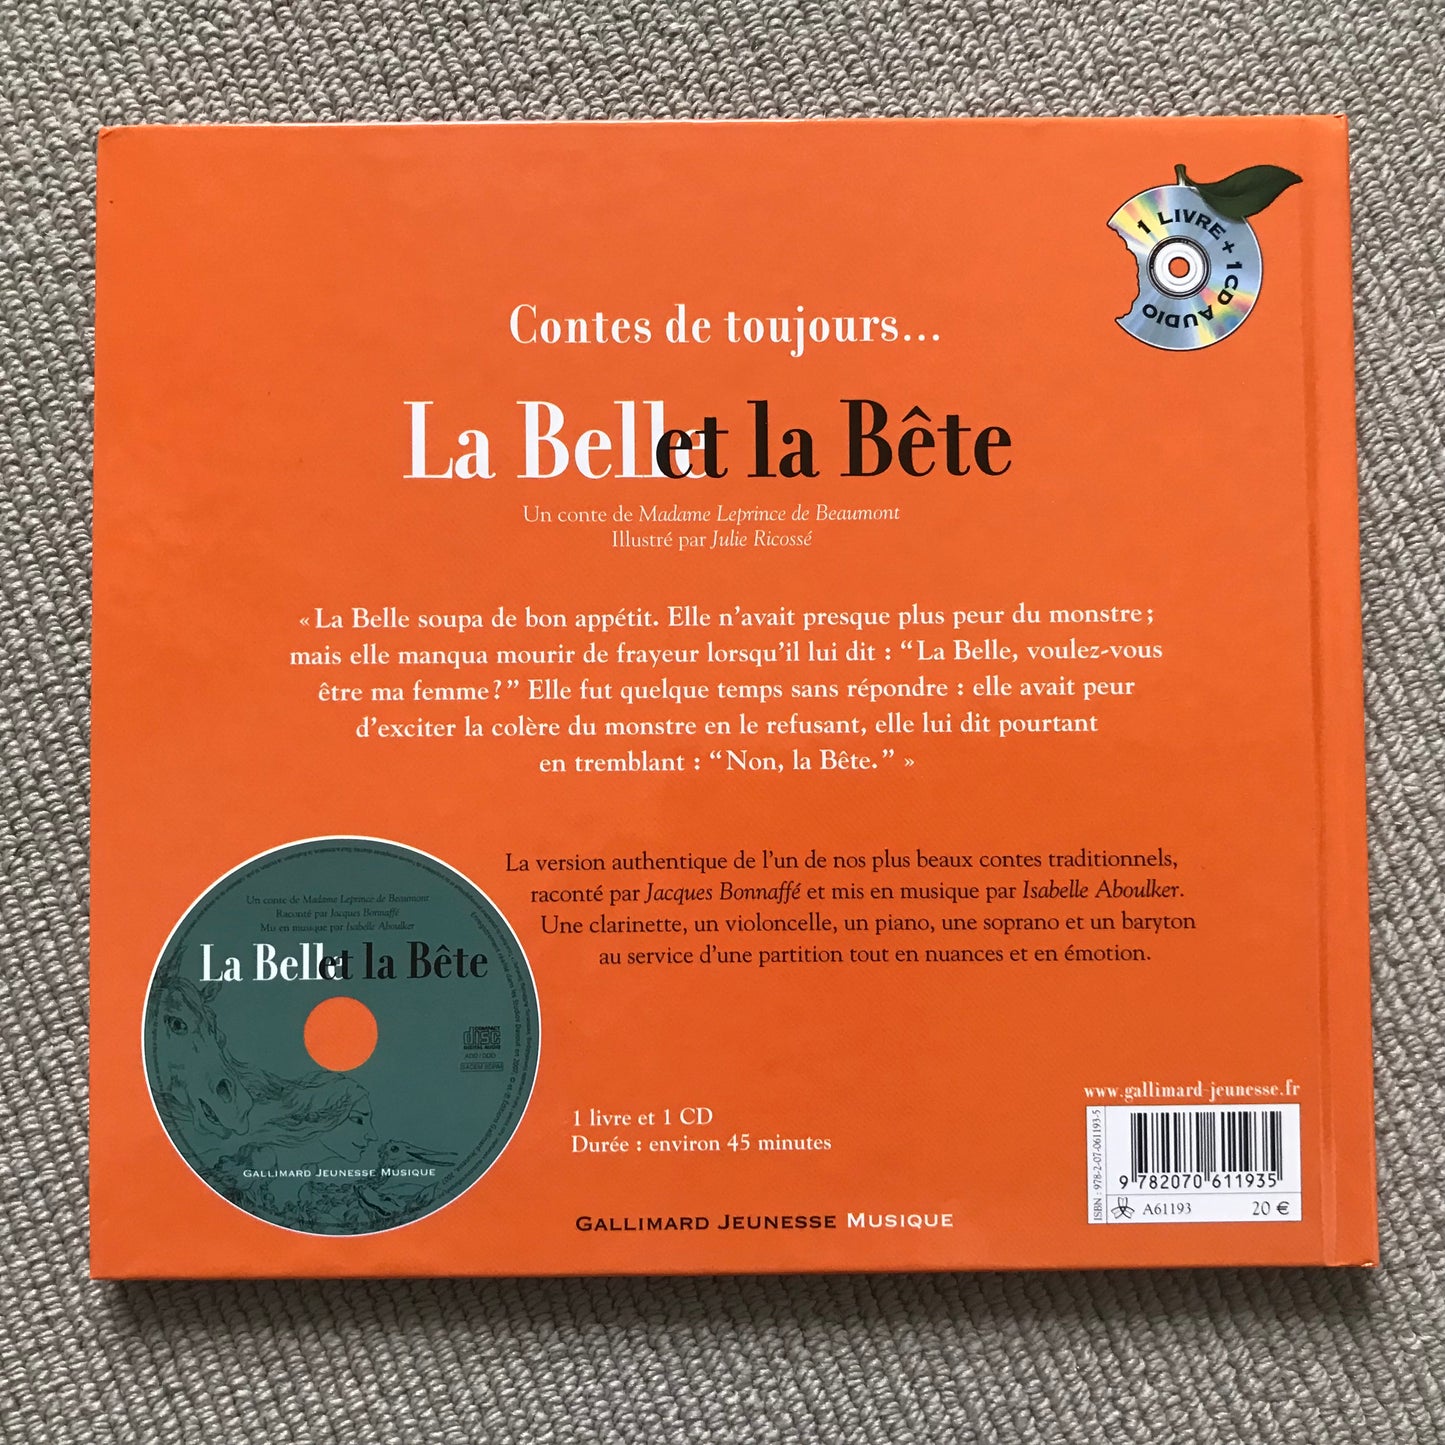 La belle et la bête - Raconté par Jacques Bonnaffé (CD)